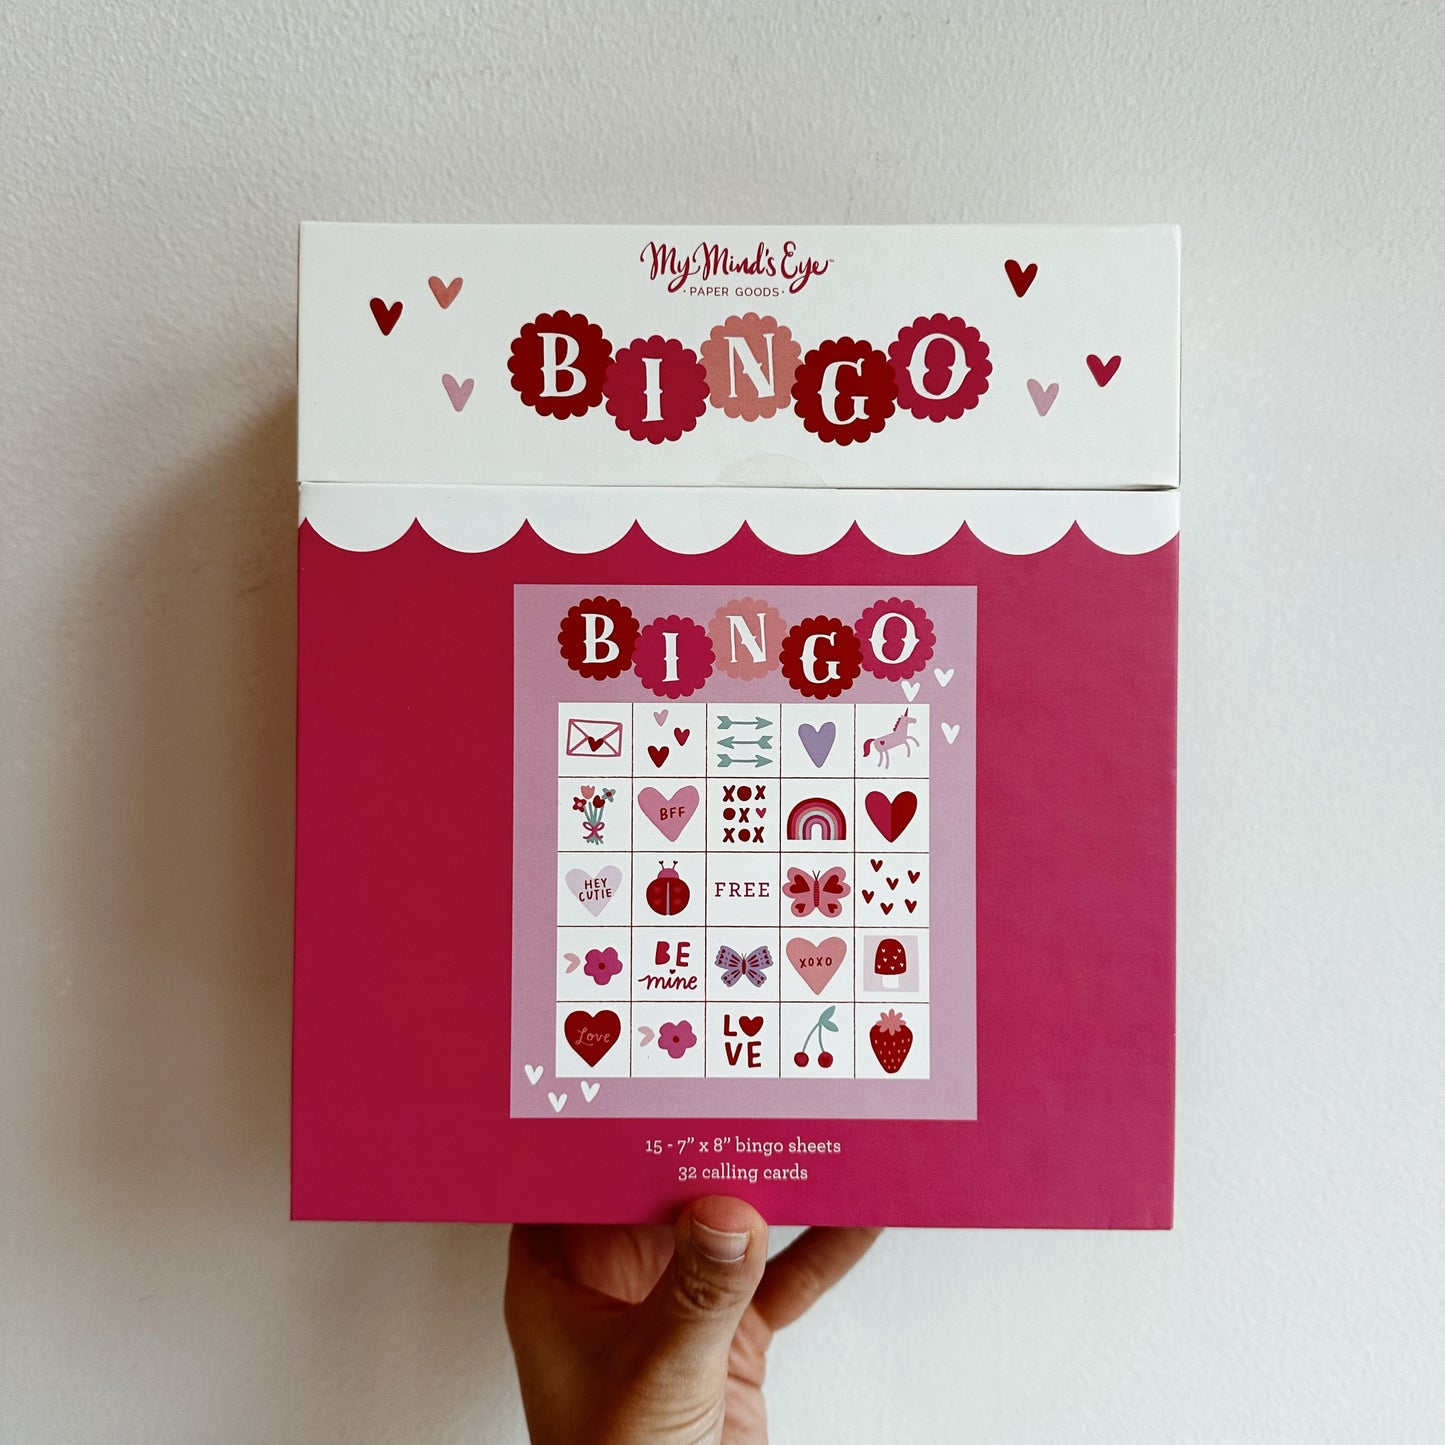 Valentine Bingo Game